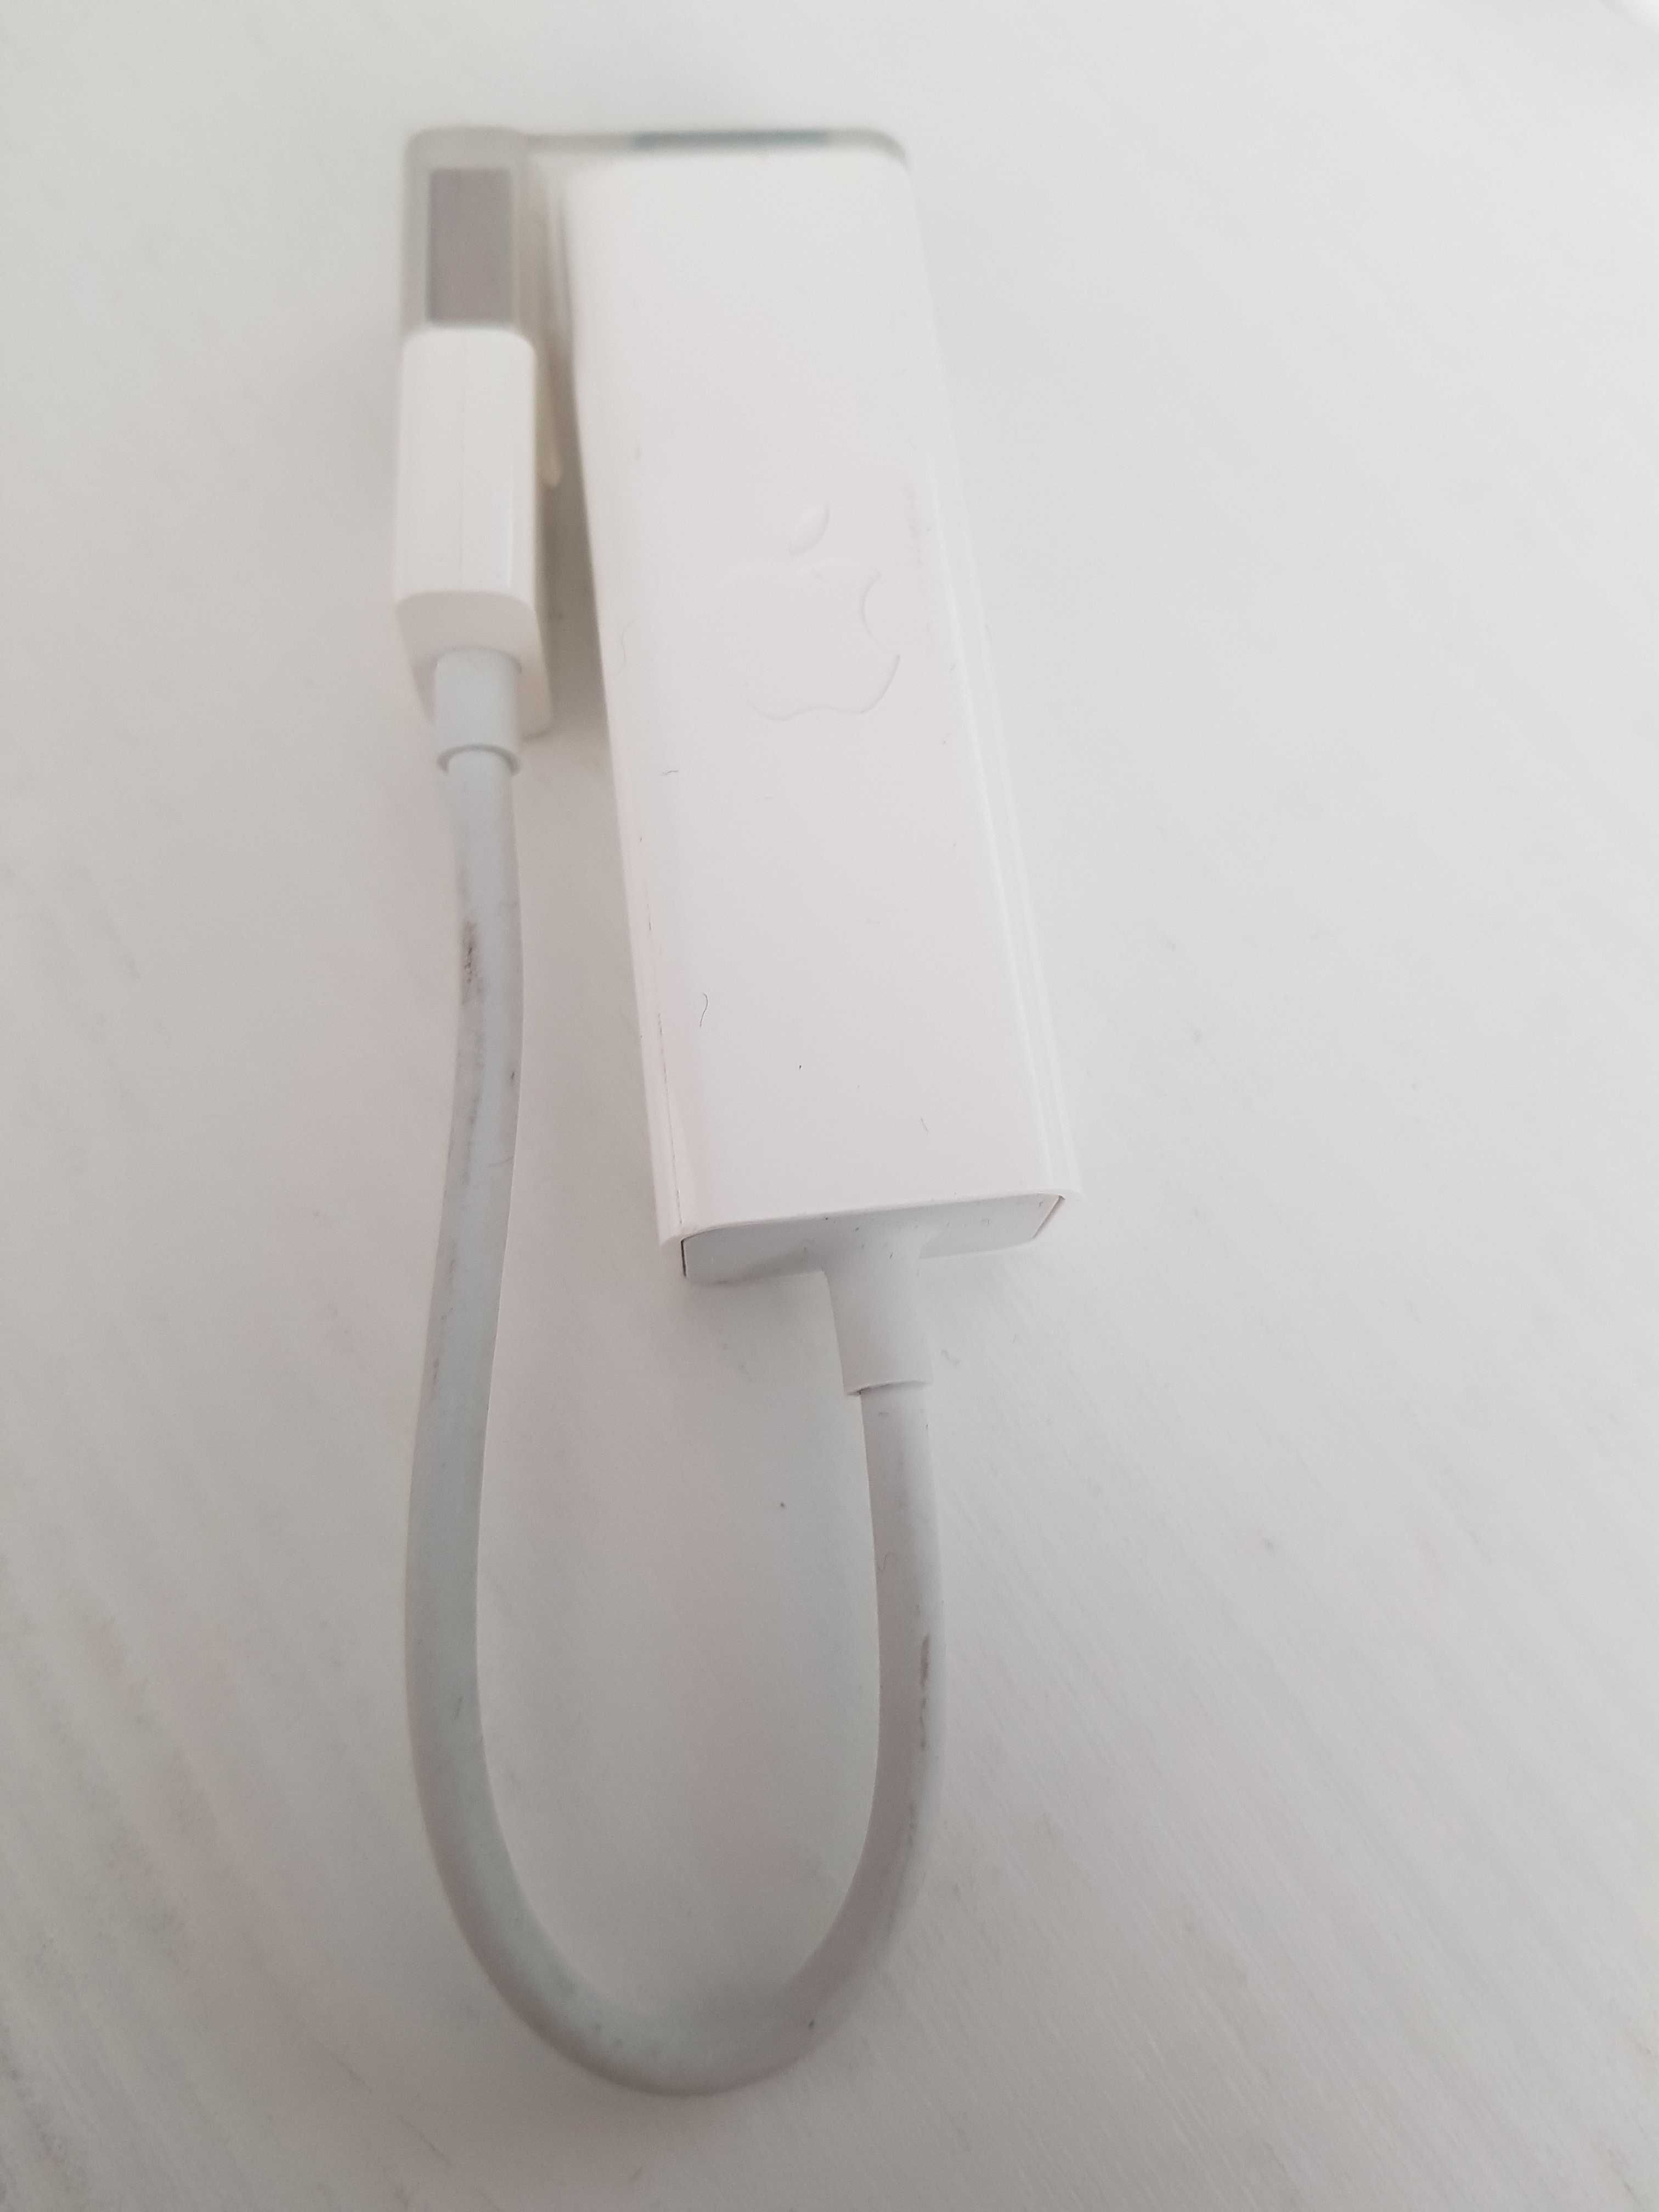 Адаптер Apple USB Ethernet новый, оригинал